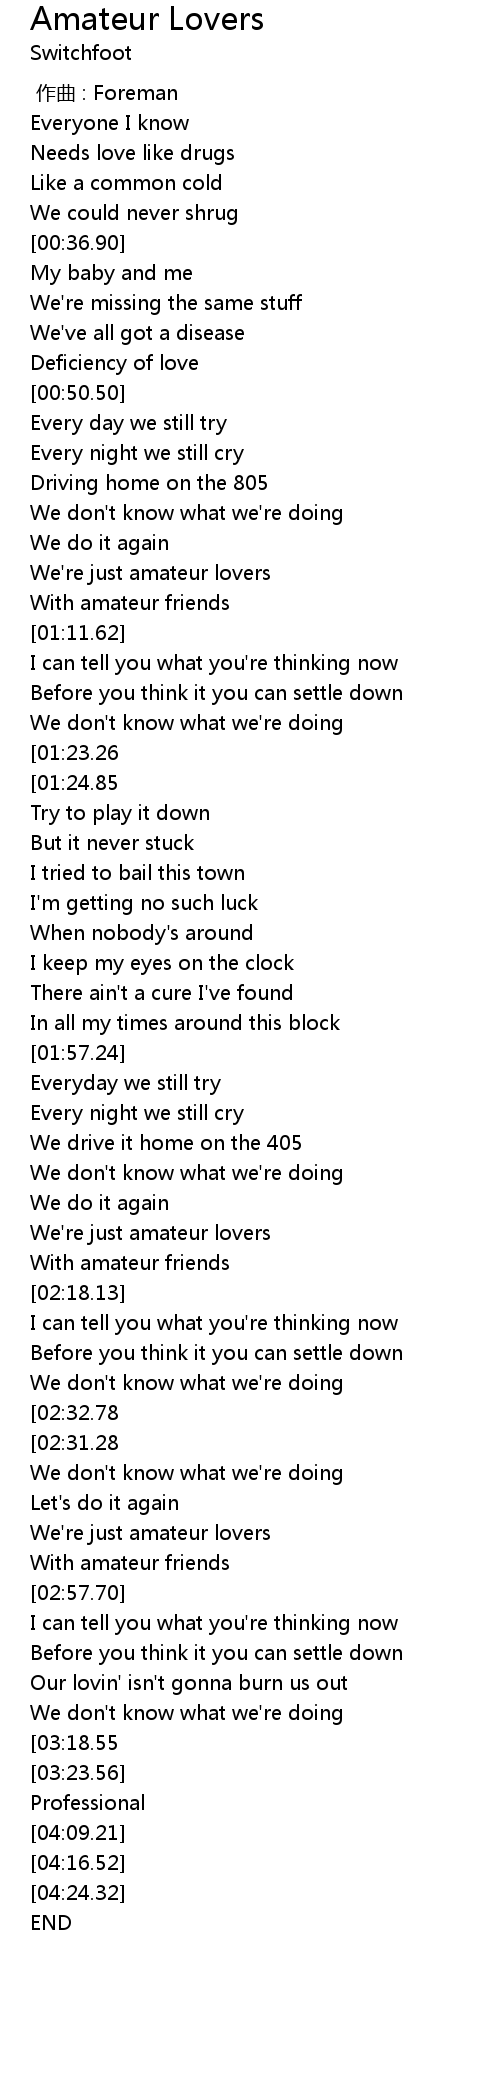 Amateur lovers lyrics